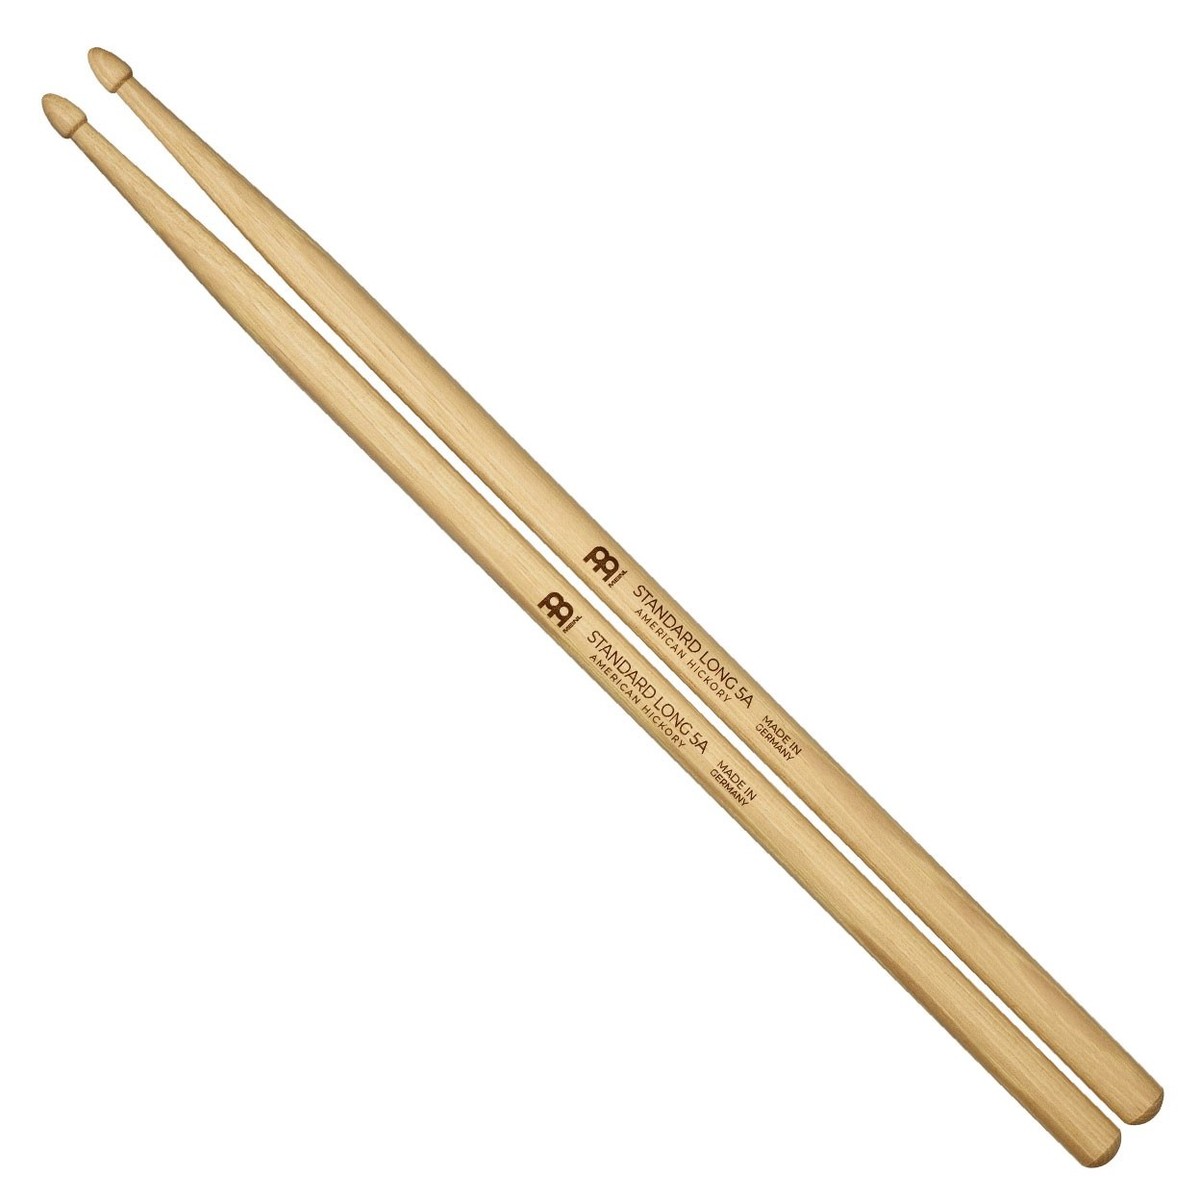 Meinl Standard Long 5A Wood Tip Hickory Drumsticks